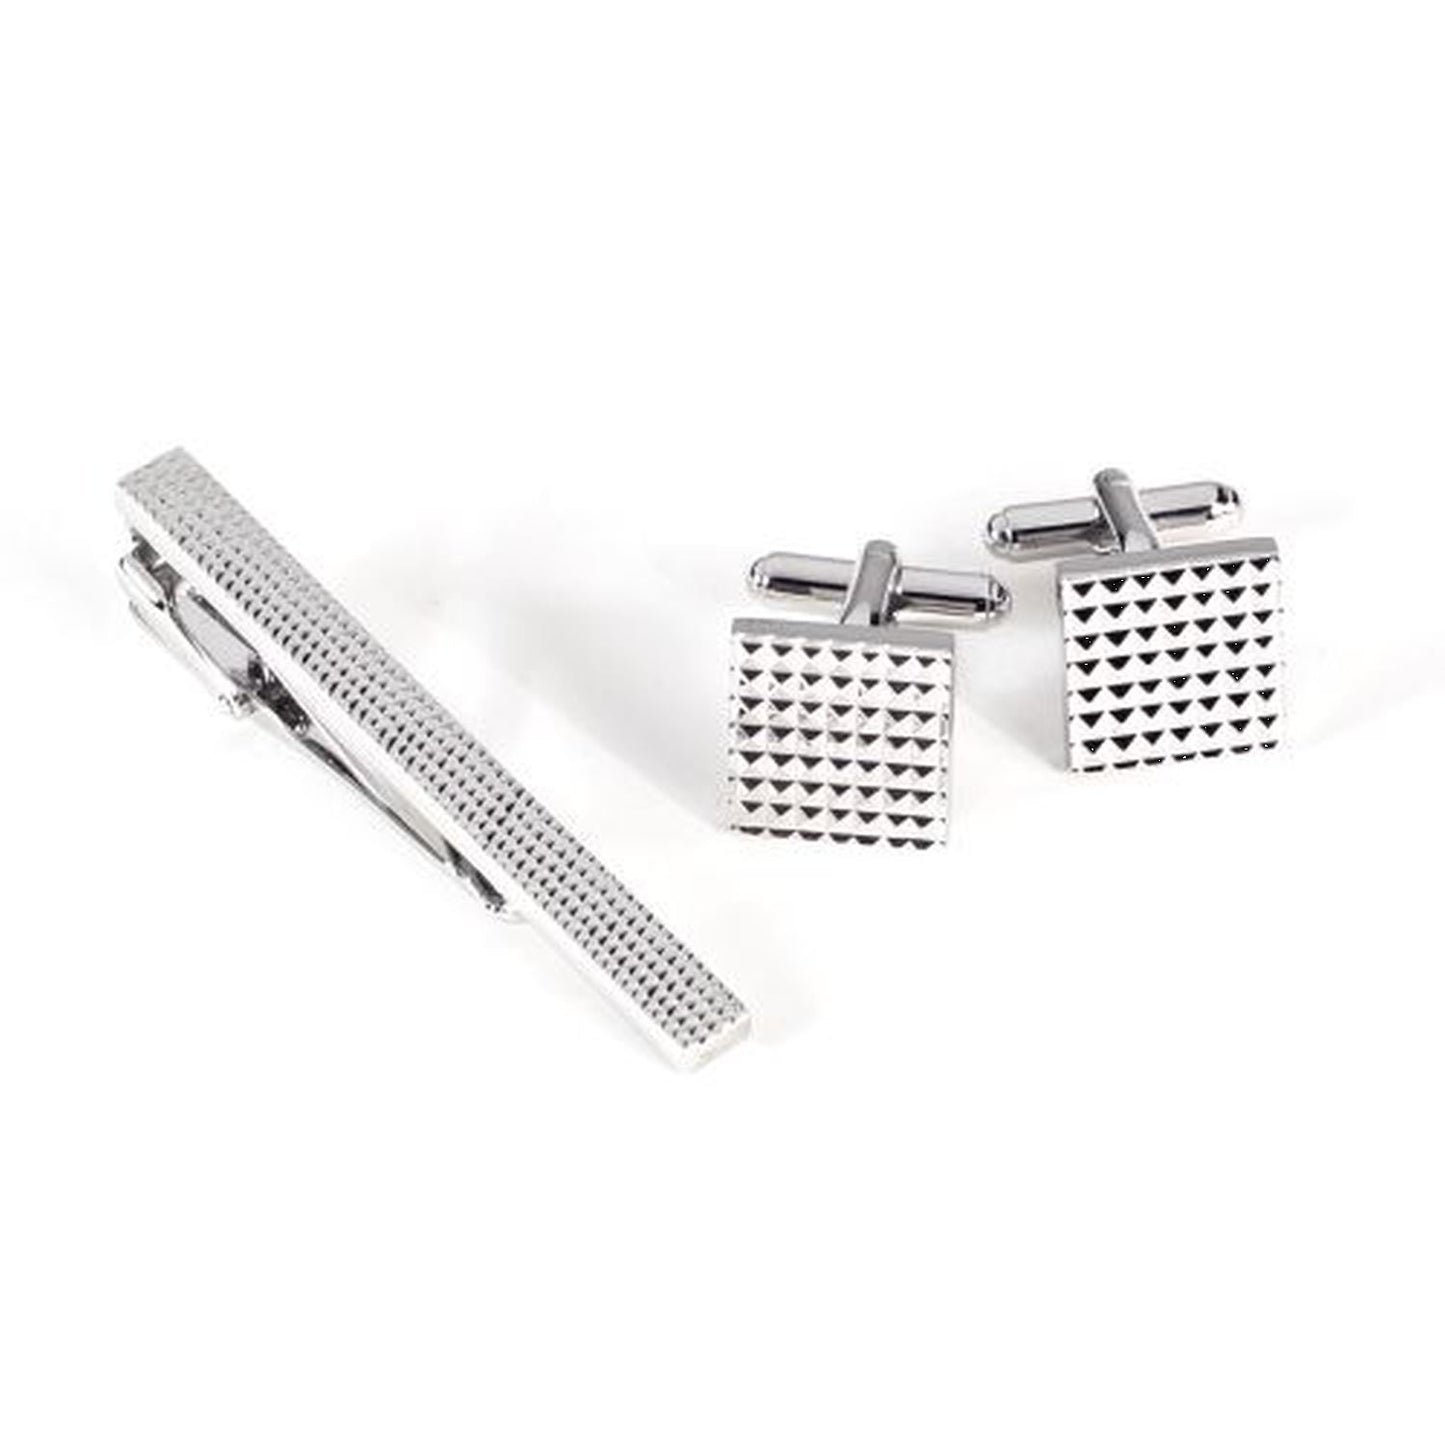 Rhodium Plated Checkered Design Cufflinks & Tie Pin Set